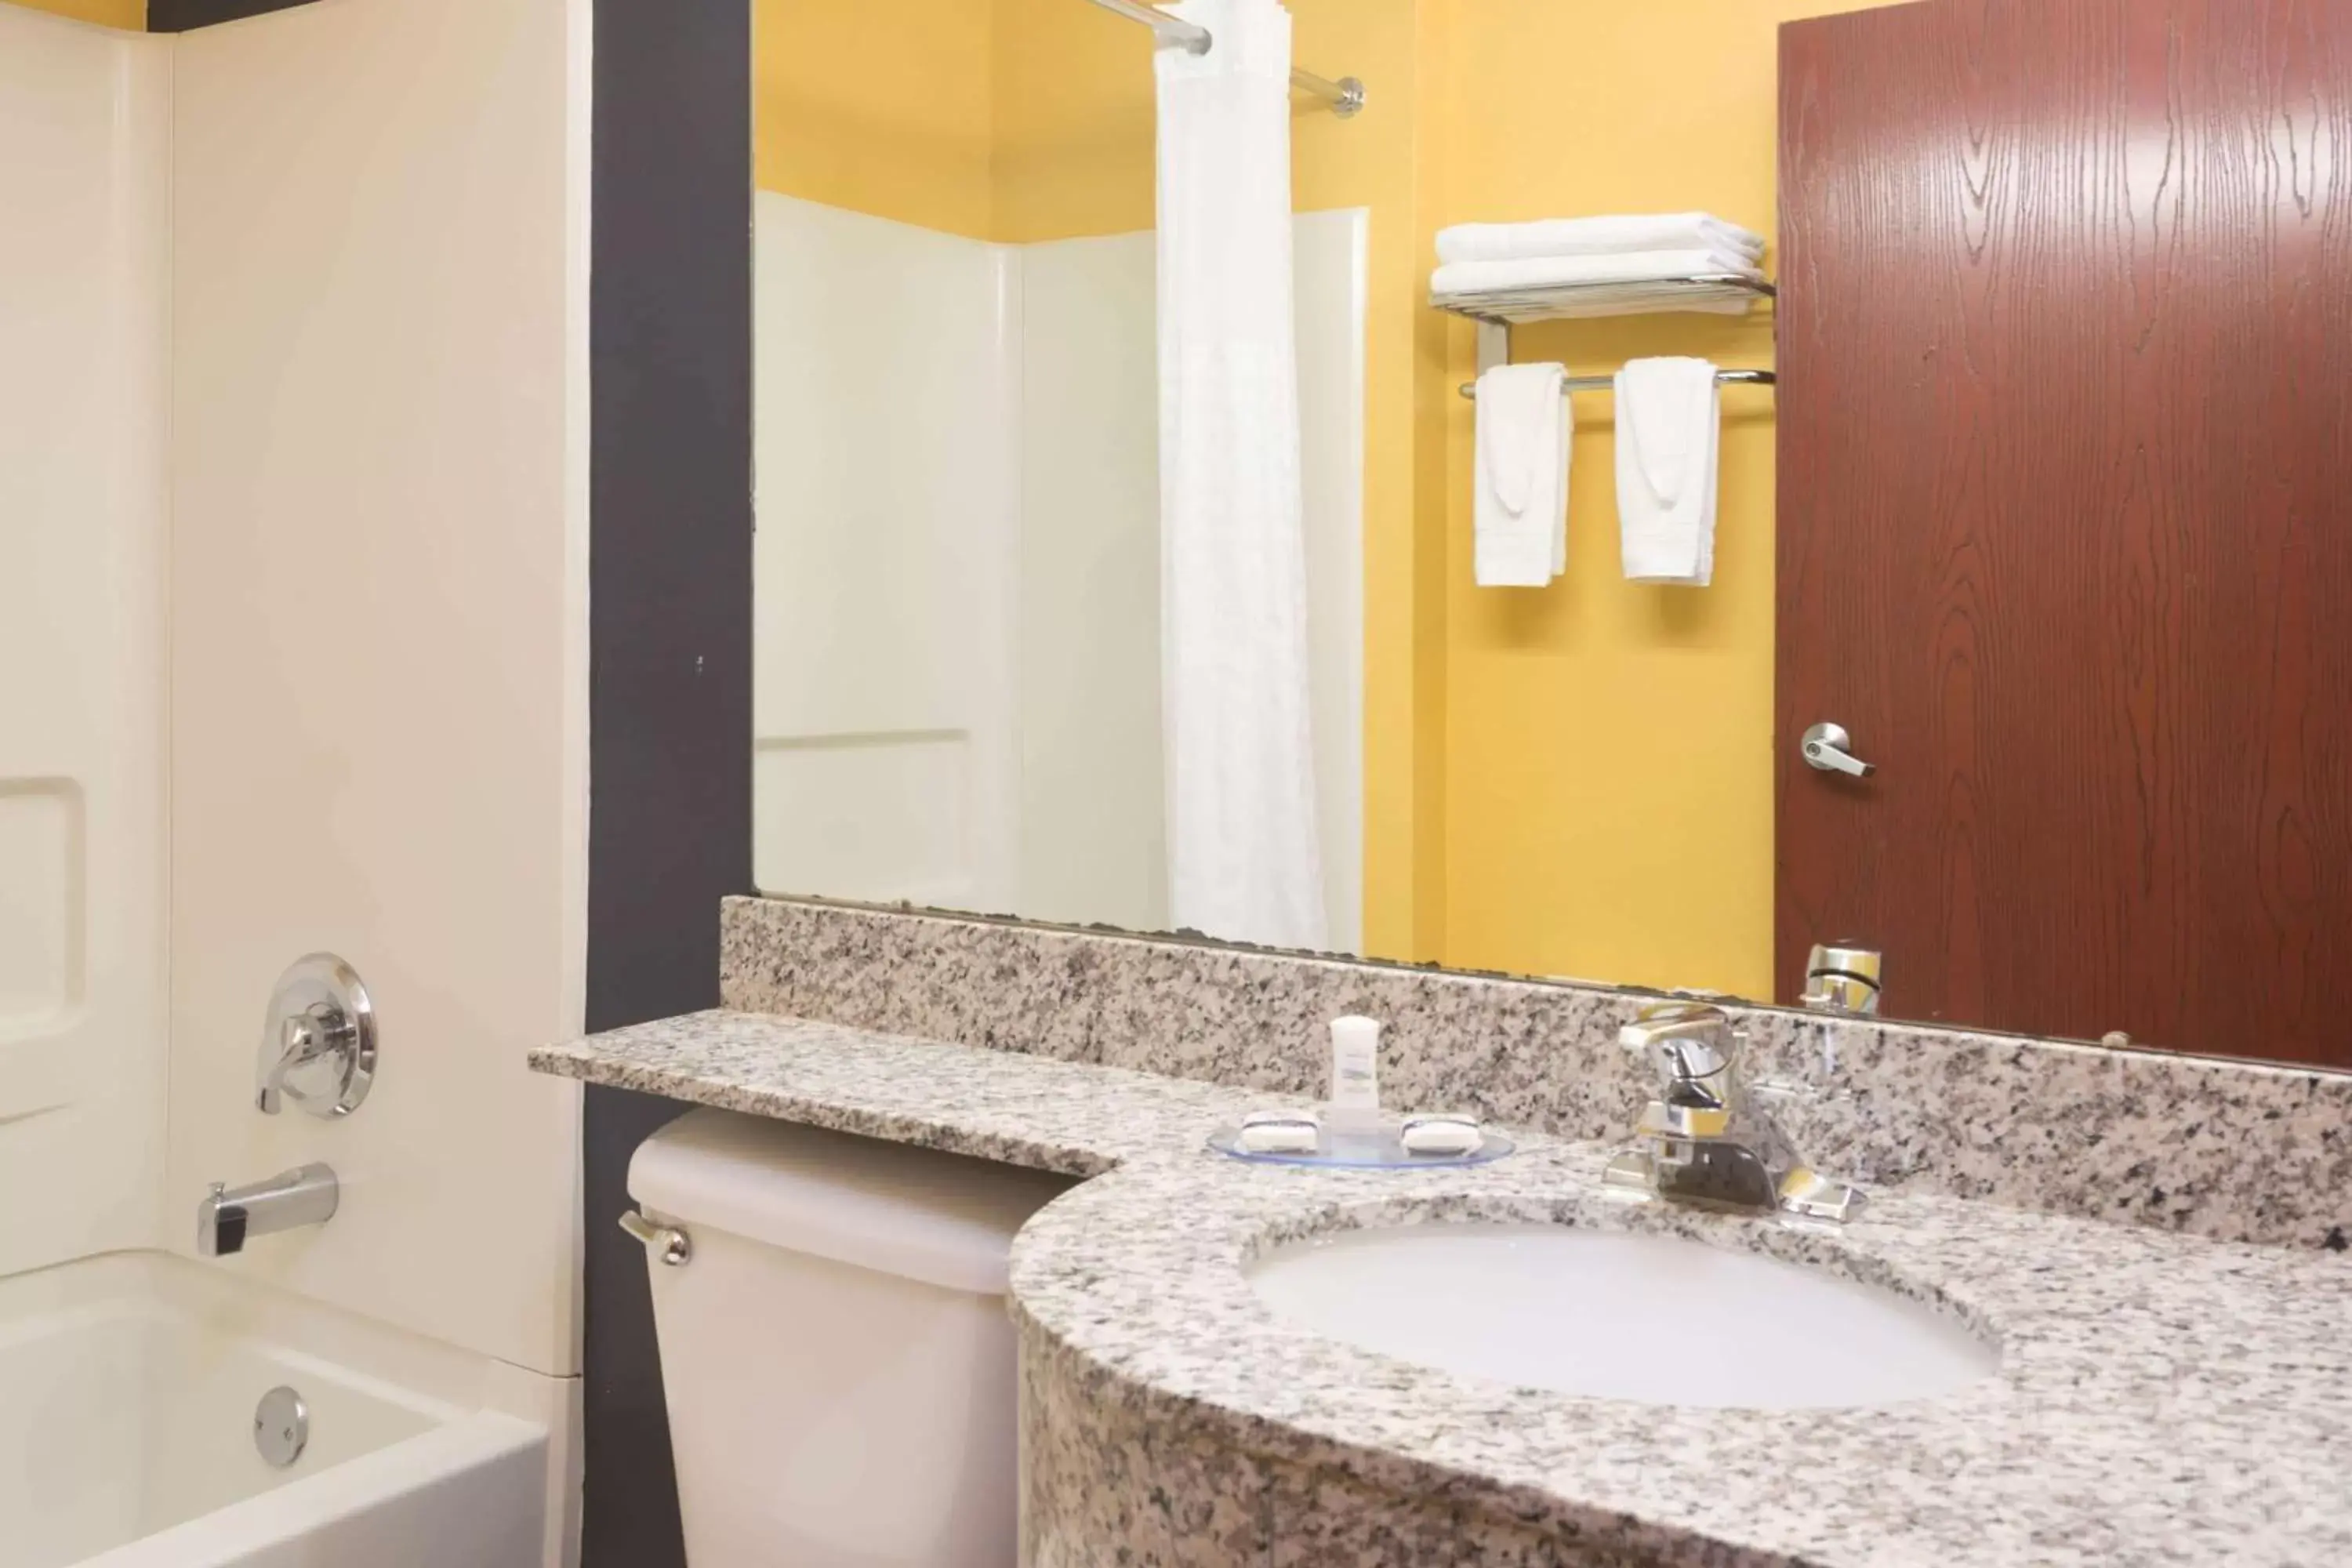 Bathroom in Microtel Inn & Suites by Wyndham Hillsborough